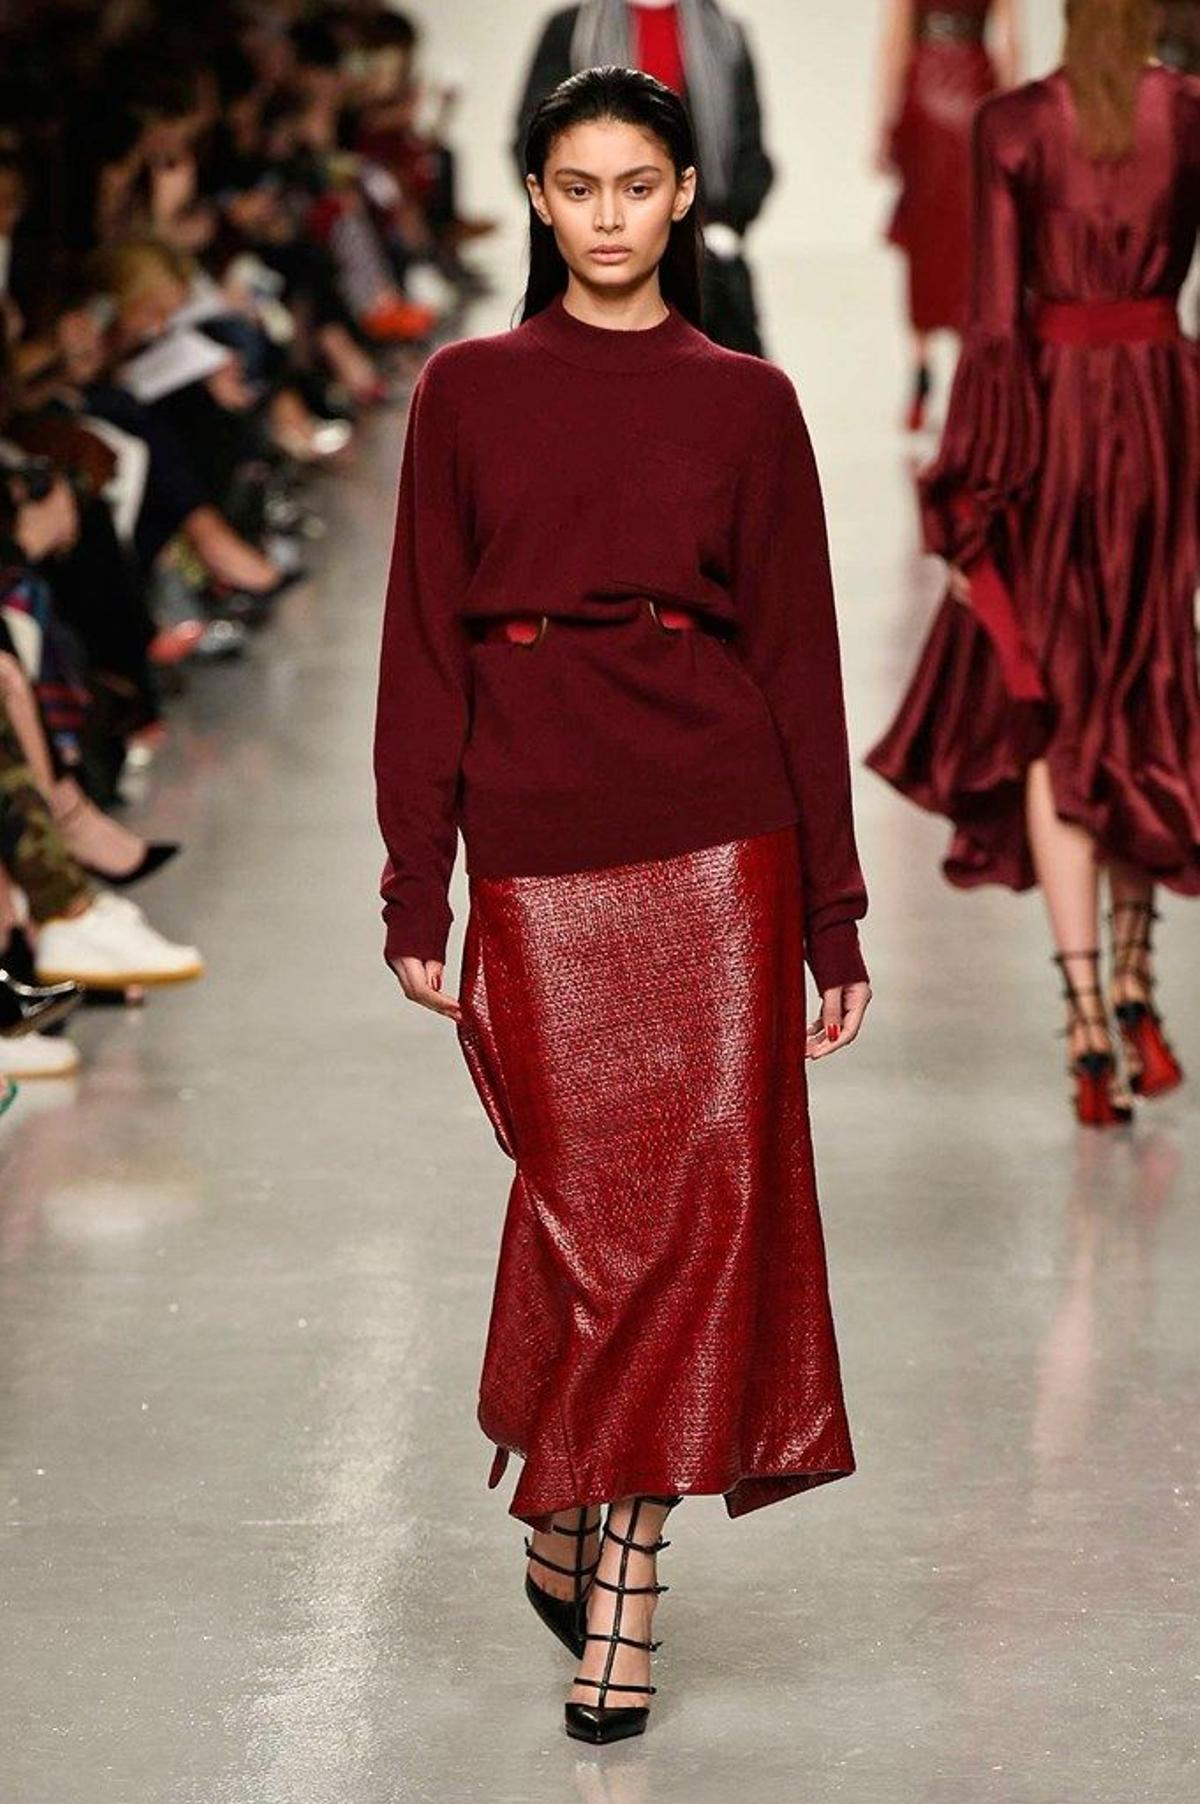 sucesor mar Mediterráneo pañuelo de papel Nuevas tendencias de pasarela: el look falda + jersey - Woman